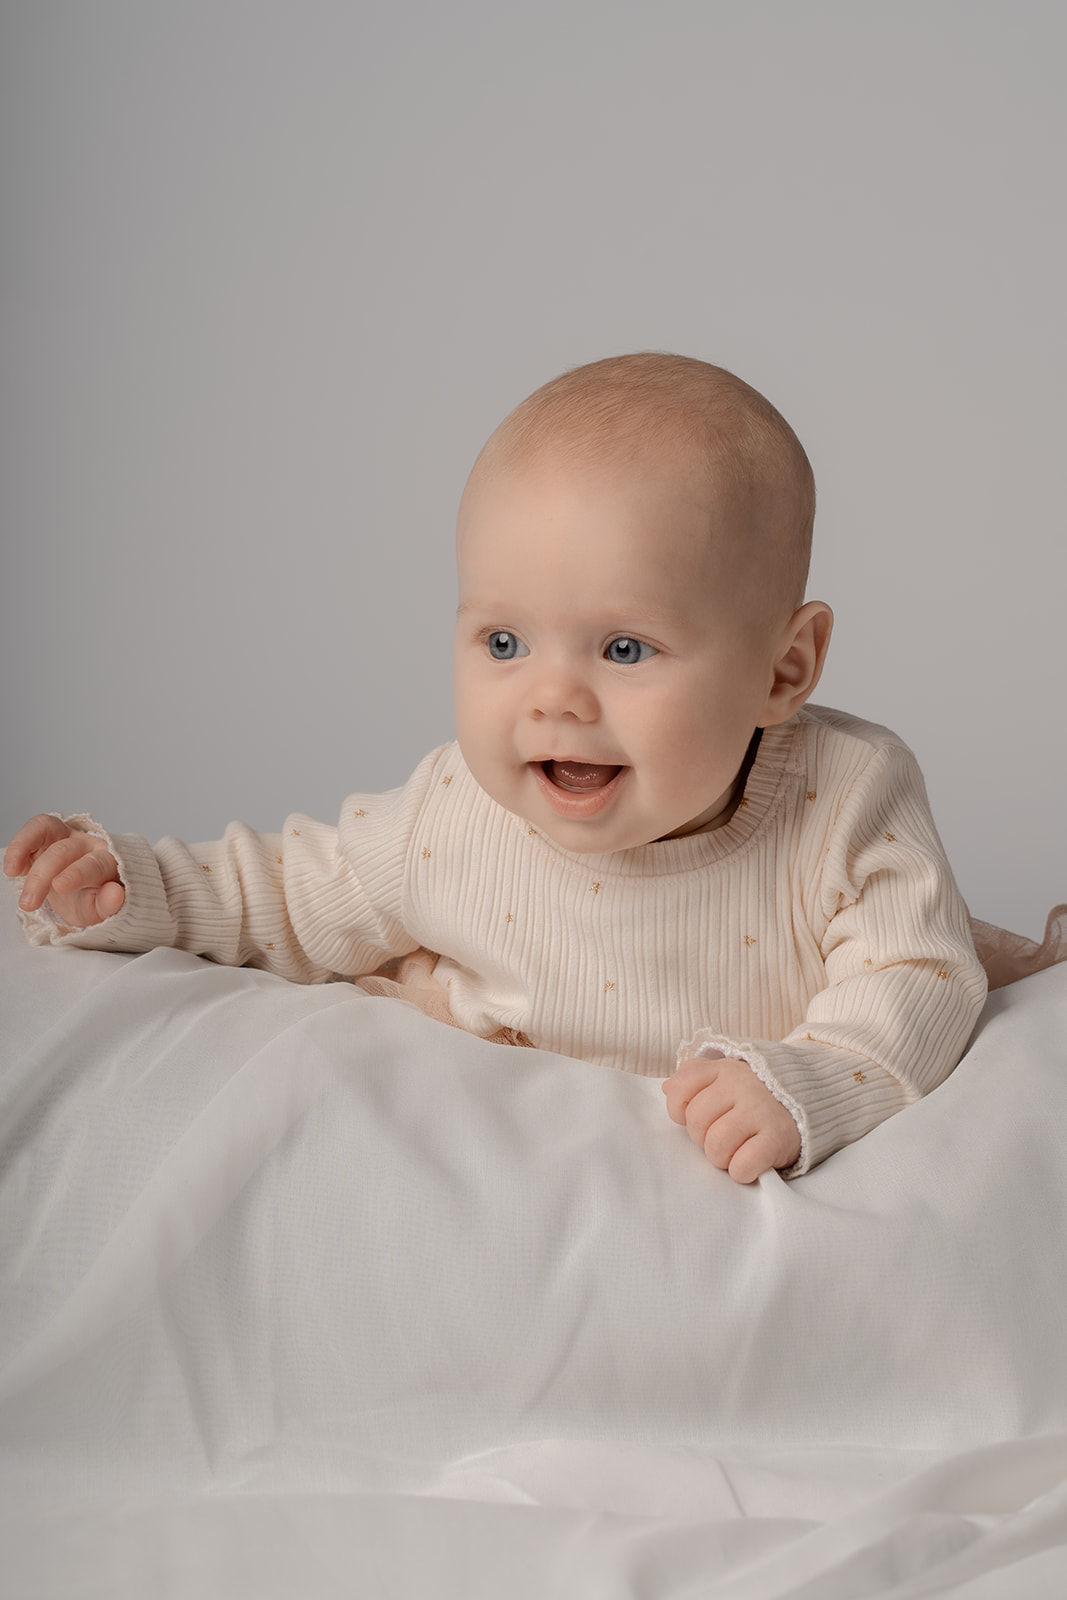 Billede af baby på 5 måneder i naturligt setop, hvor hun ligger på maven og smiler